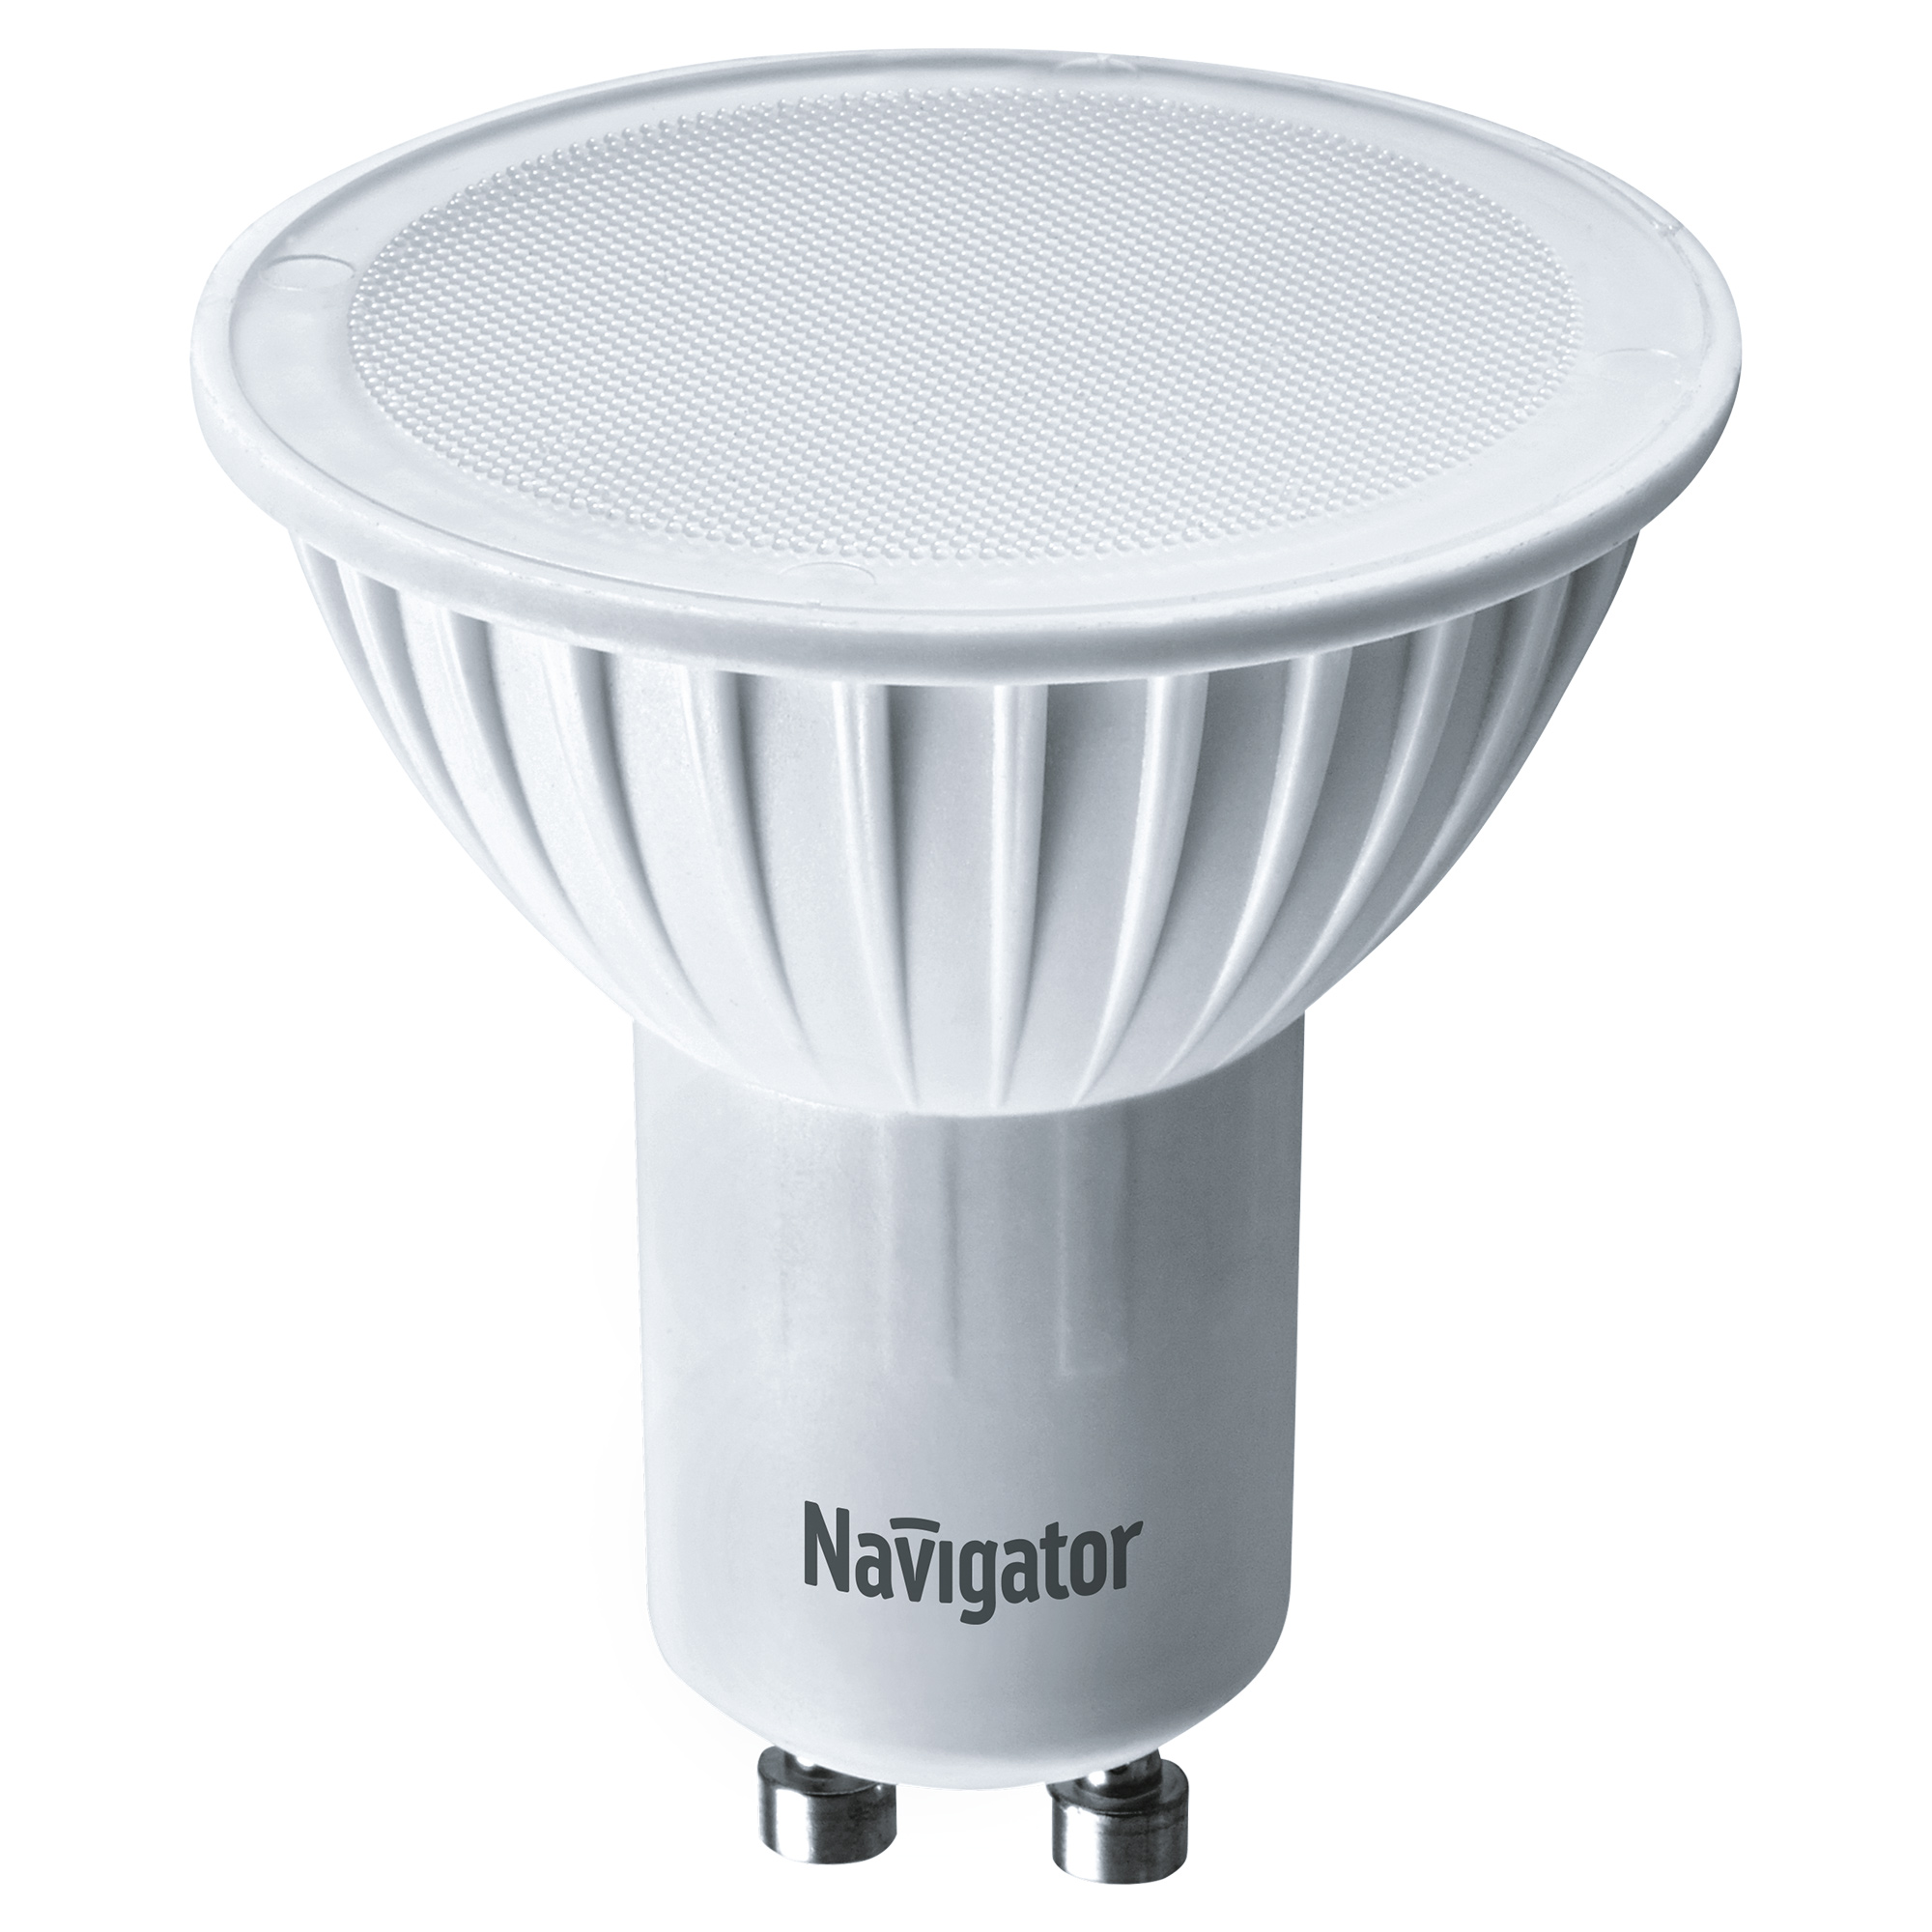 Лампа светодиодная Navigator PAR16 7Вт цоколь GU10 (теплый свет) лампа светодиодная navigator 7вт 560лм 4000k gu10 par16 230в матовый спот